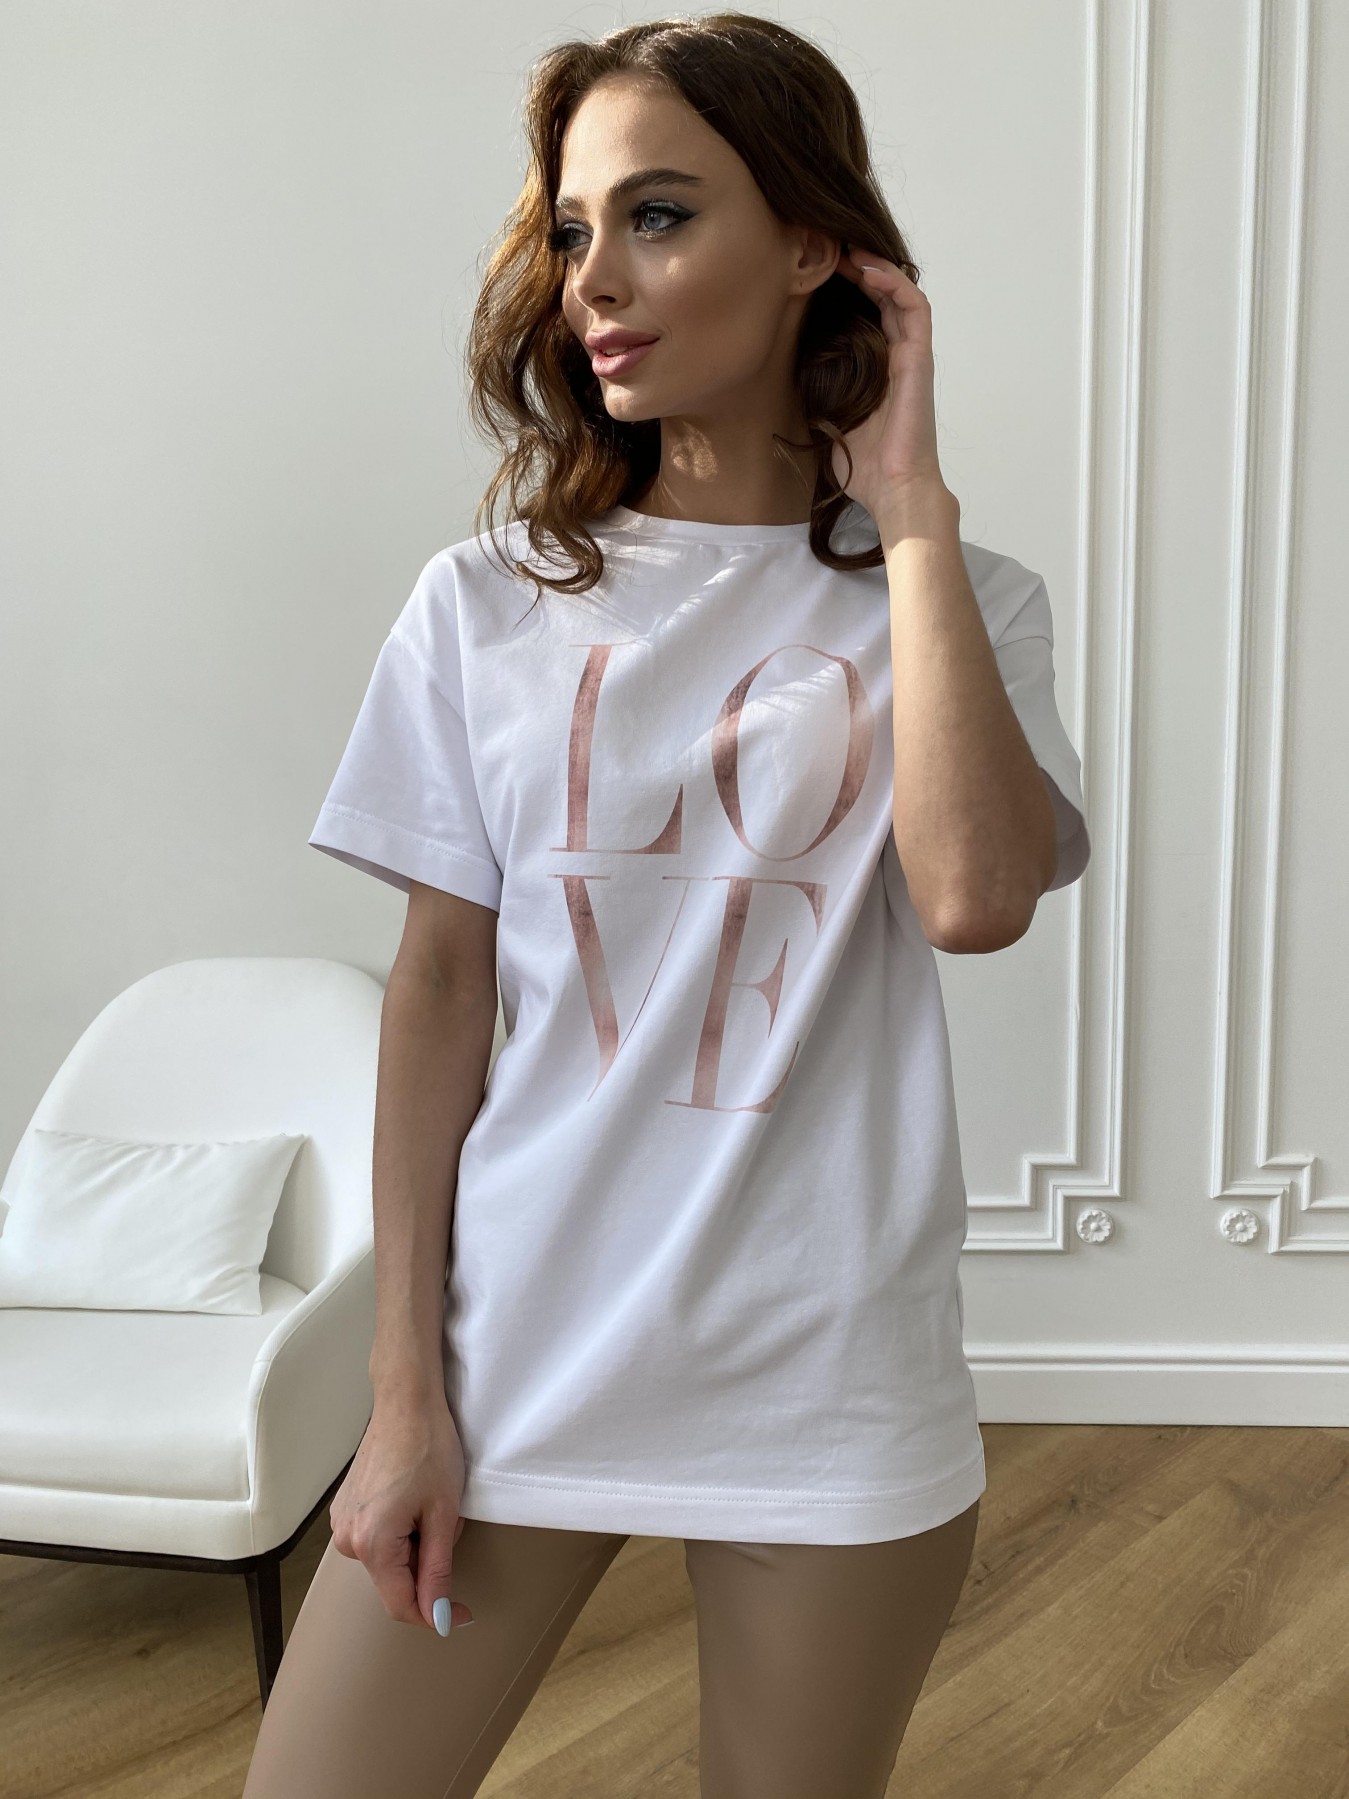 Лове футболка из вискозы однотонная хлопок 11176 АРТ. 47664 Цвет: Белый - фото 5, интернет магазин tm-modus.ru